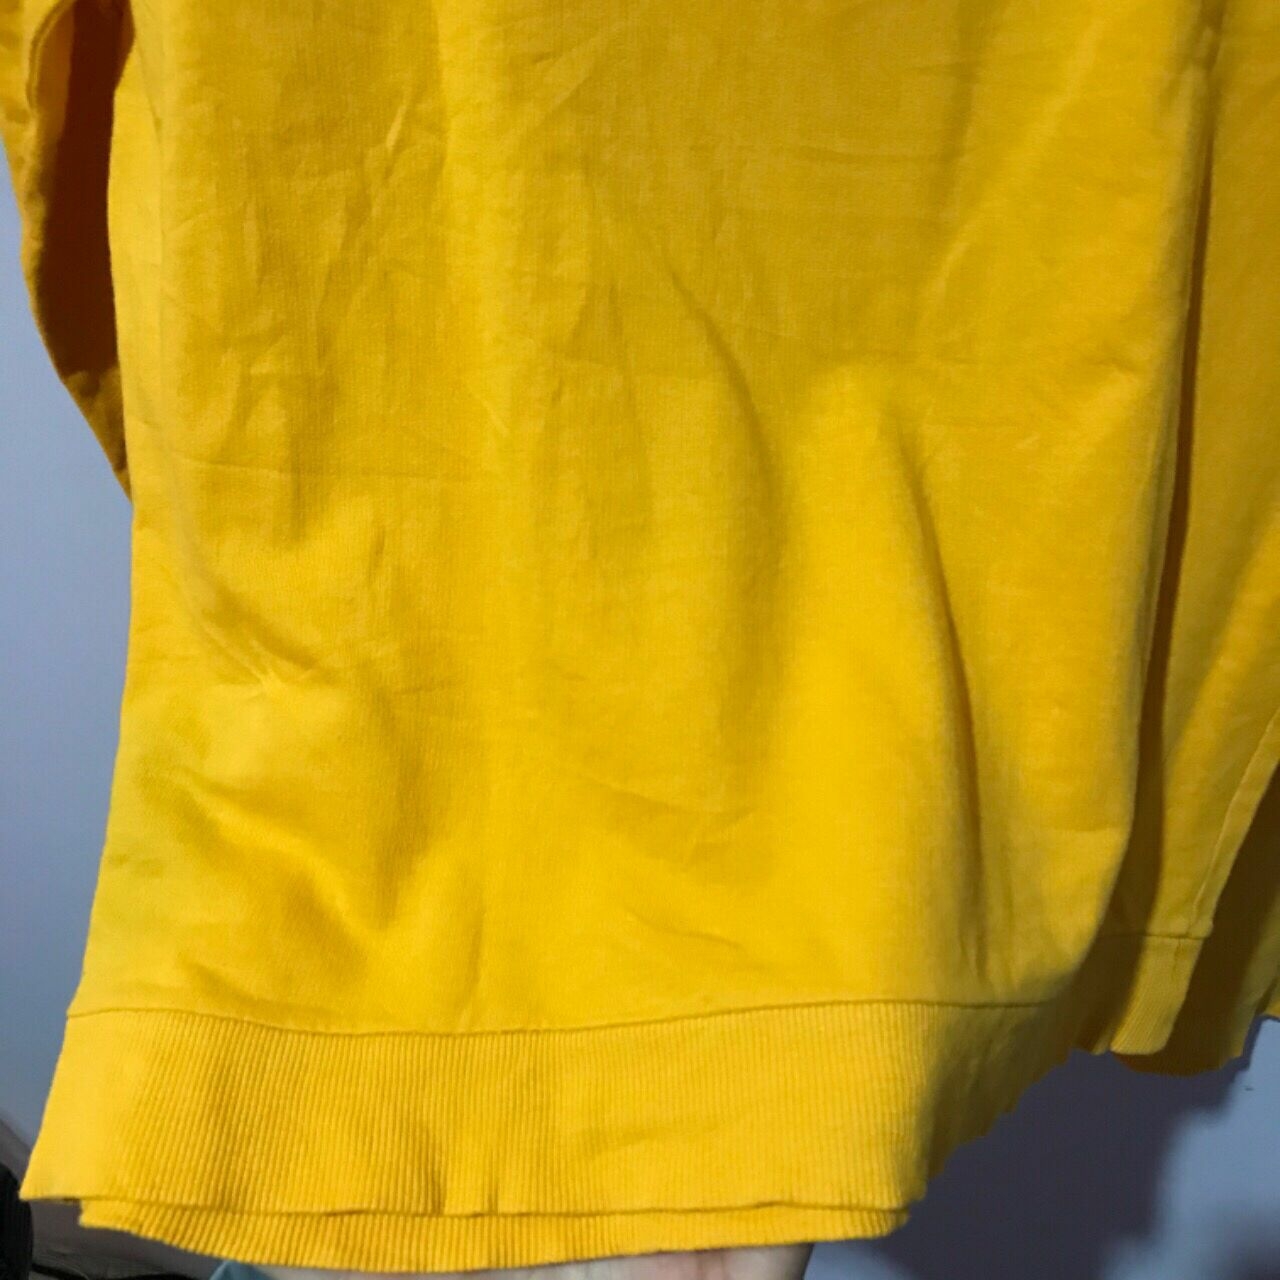 H&M Yellow Sweatshirt